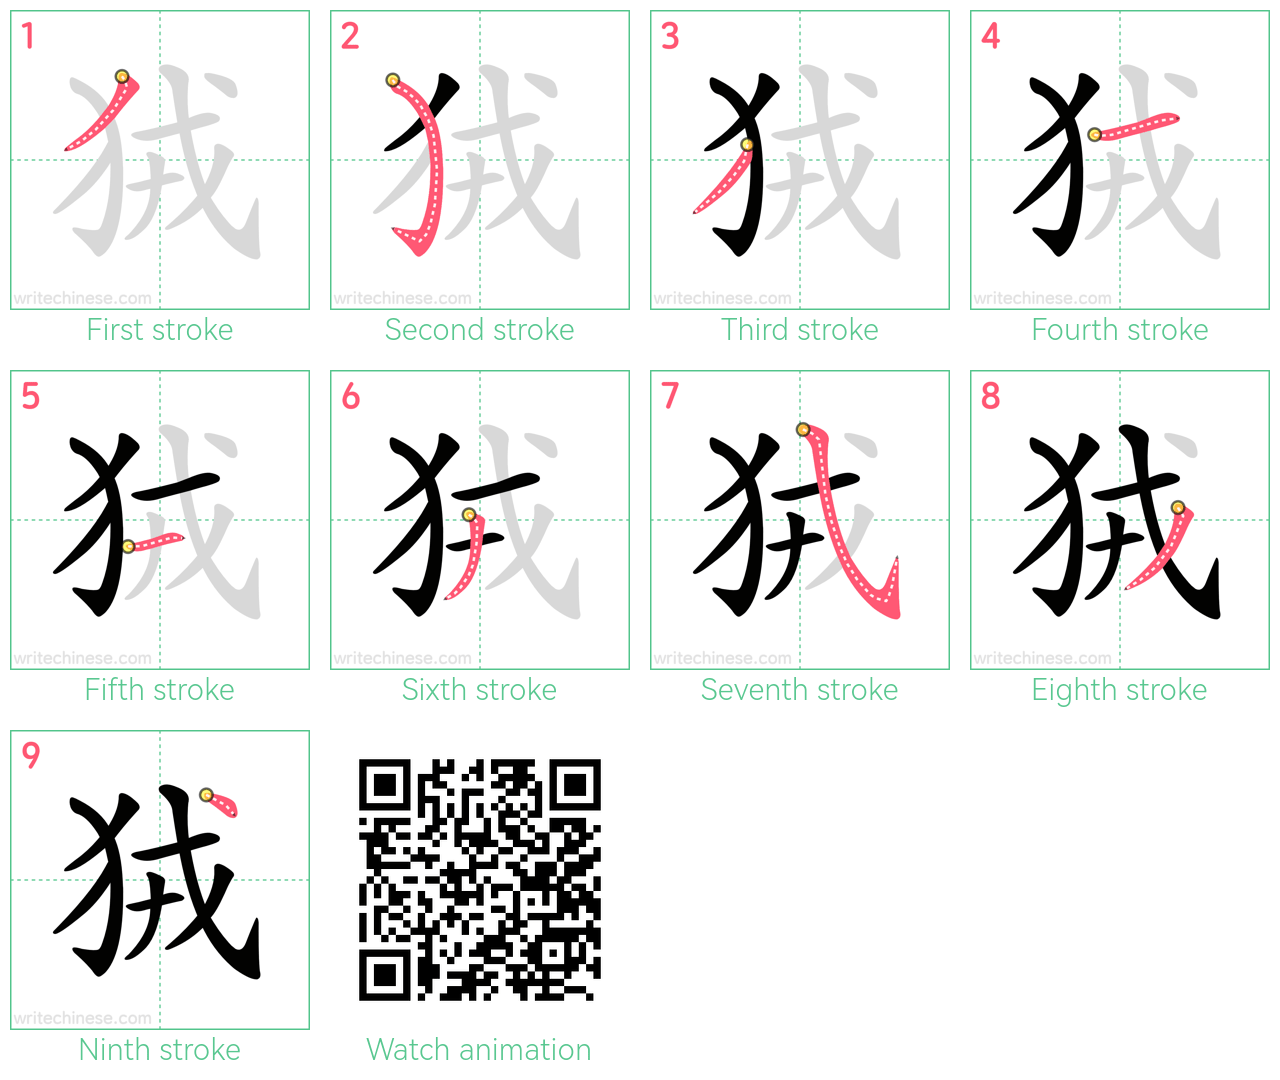 狨 step-by-step stroke order diagrams